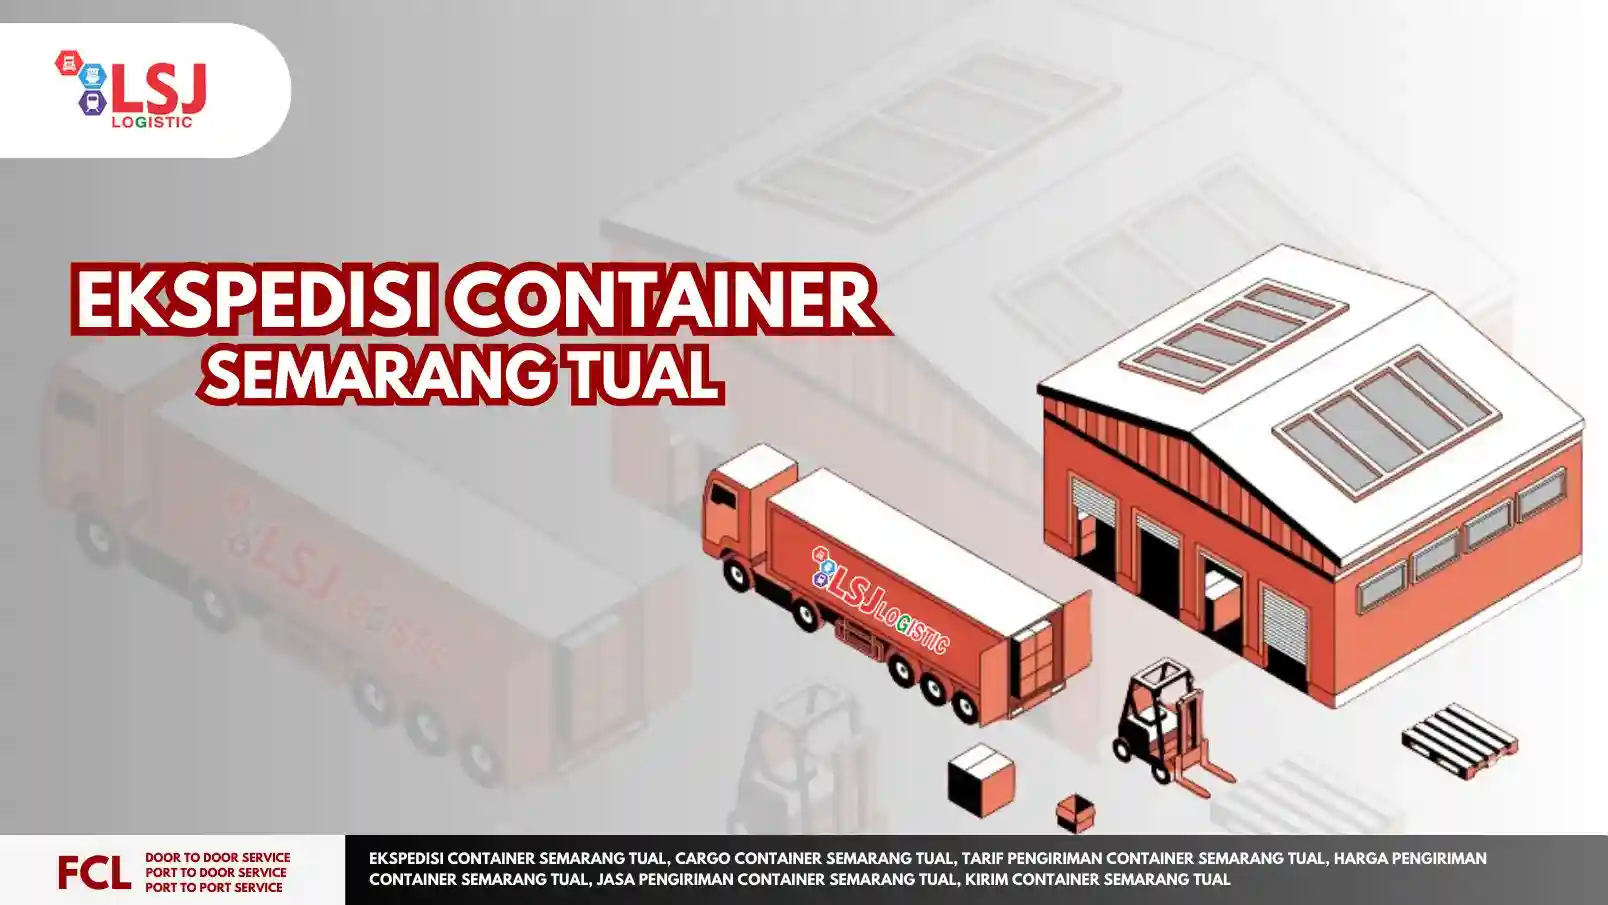 Ekspedisi Container Semarang Tual